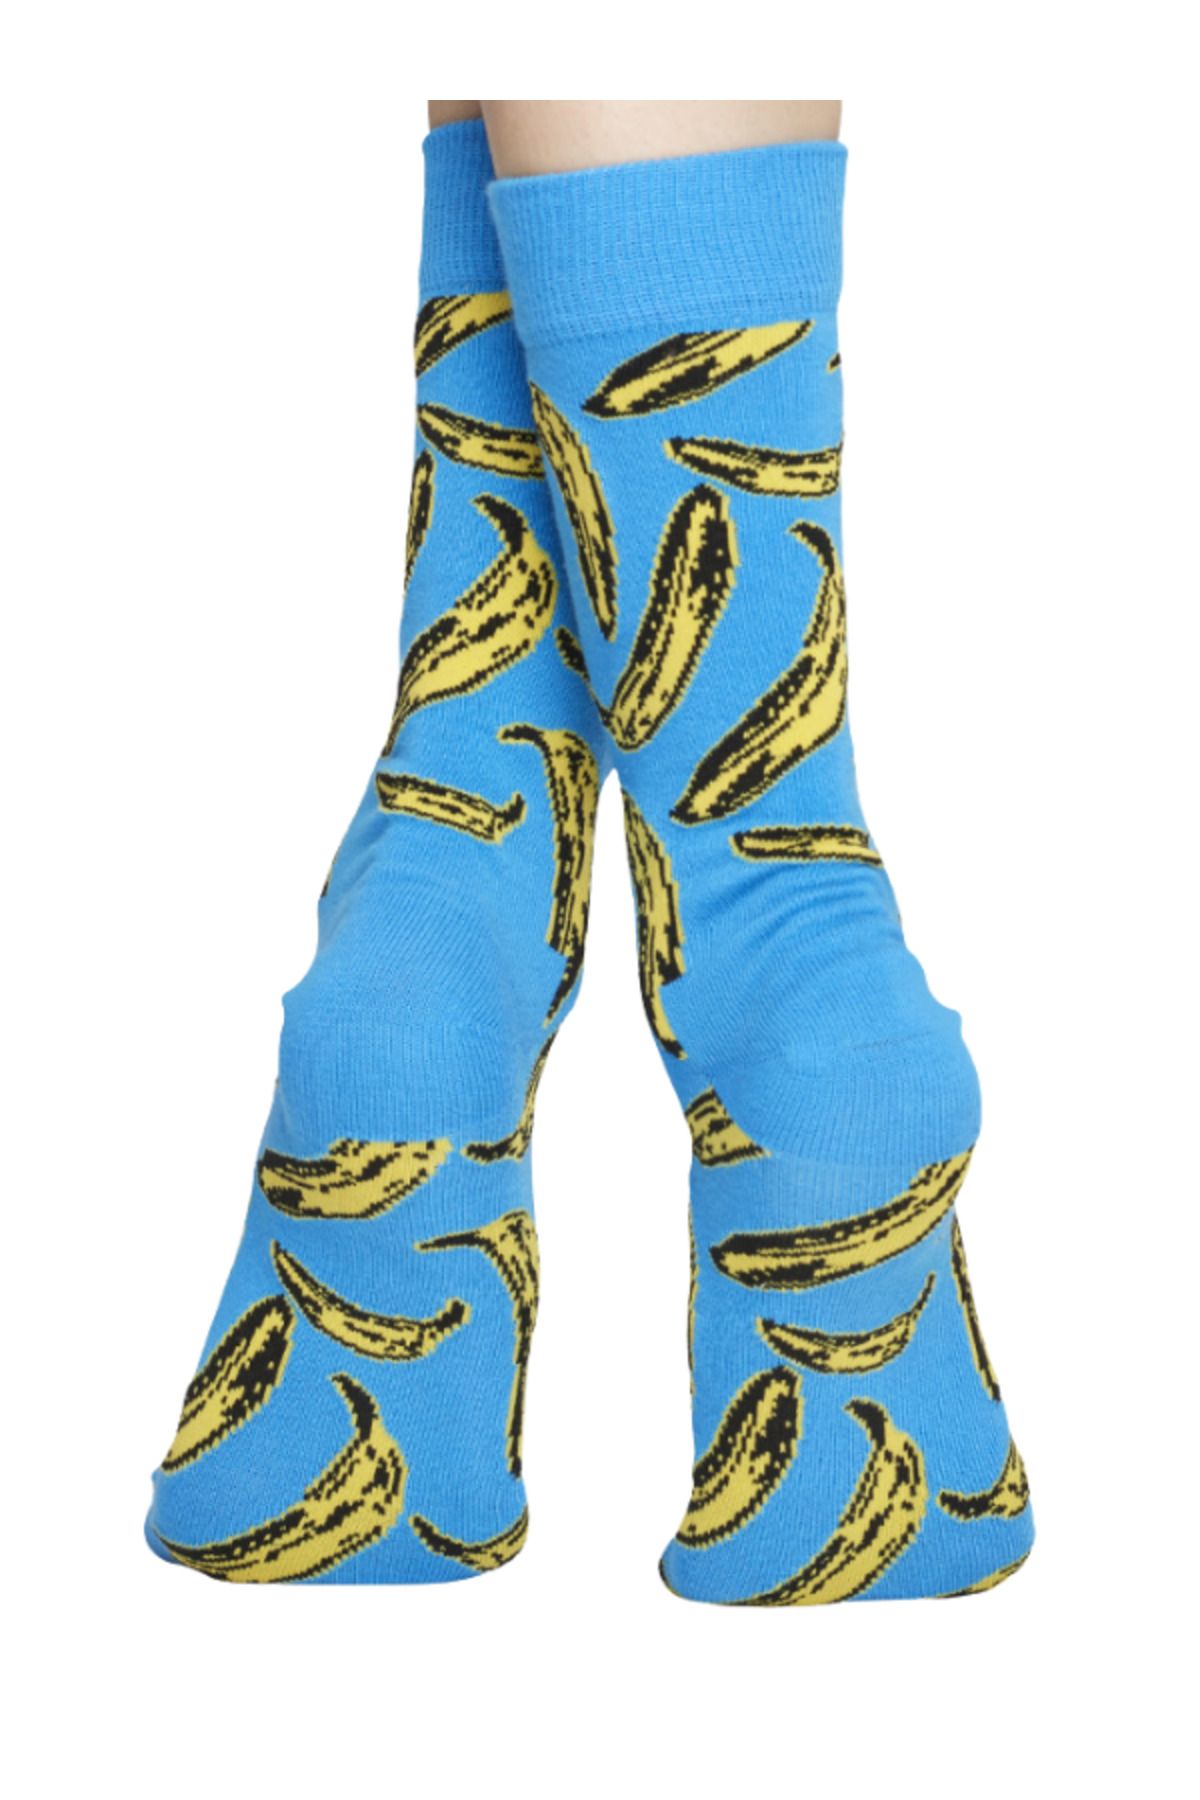 Happy Socks İthal Özel Seri Banana Socks Blue Muz Renkli Soket Çorap